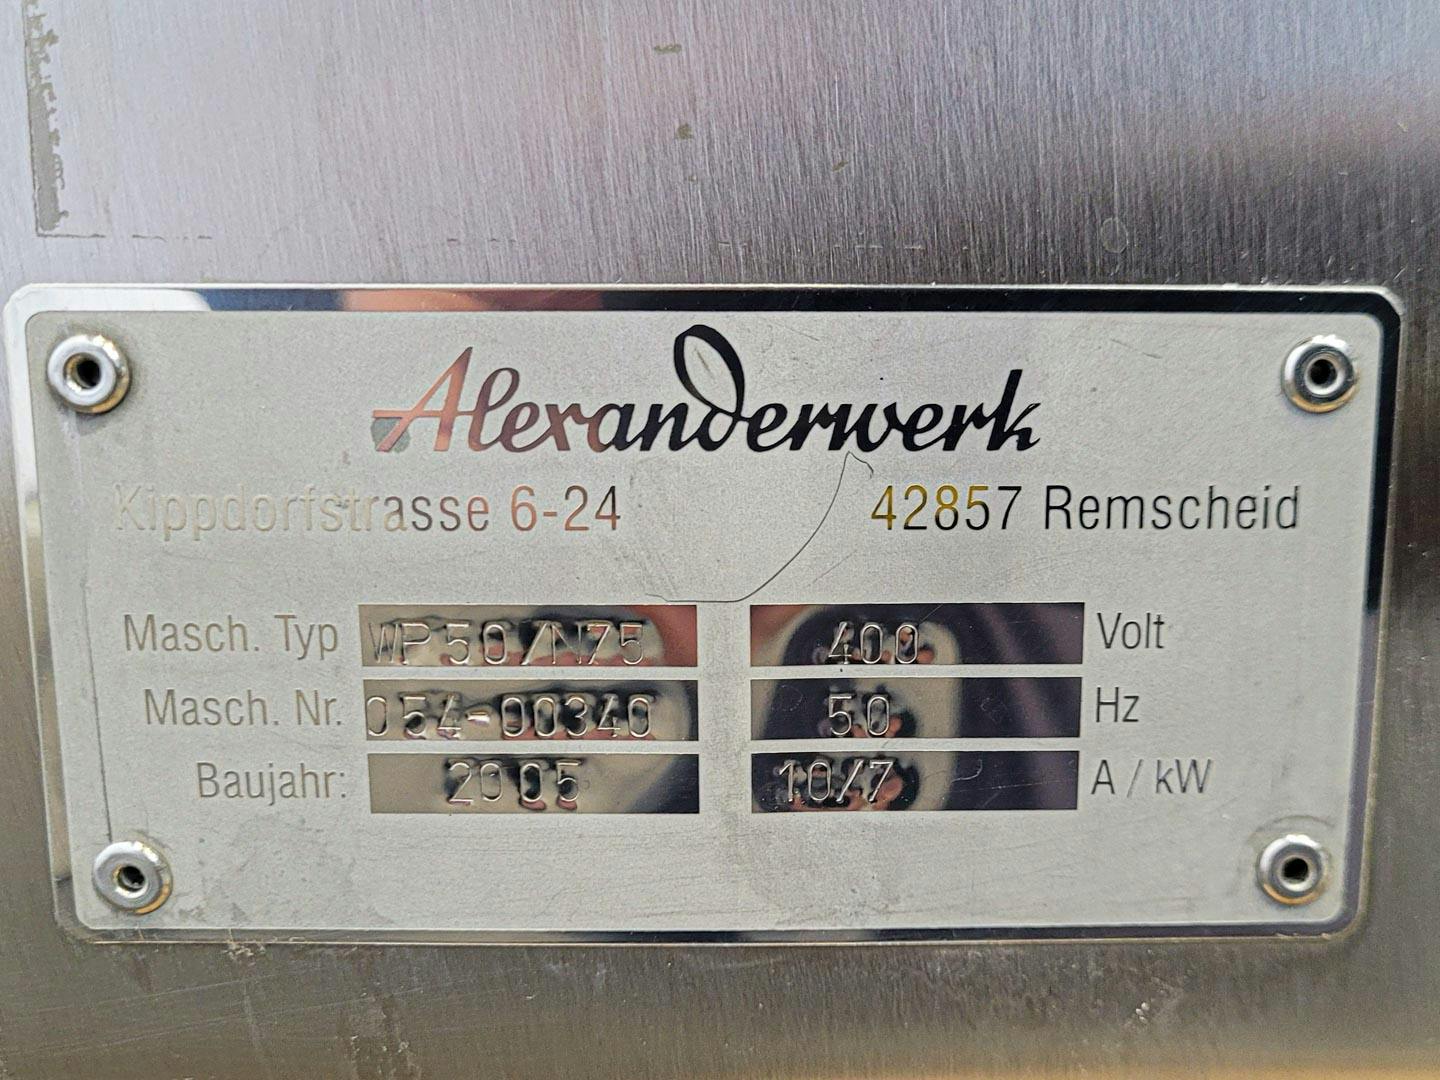 Alexanderwerk WP 50 N/75 - Walsencompactor - image 14